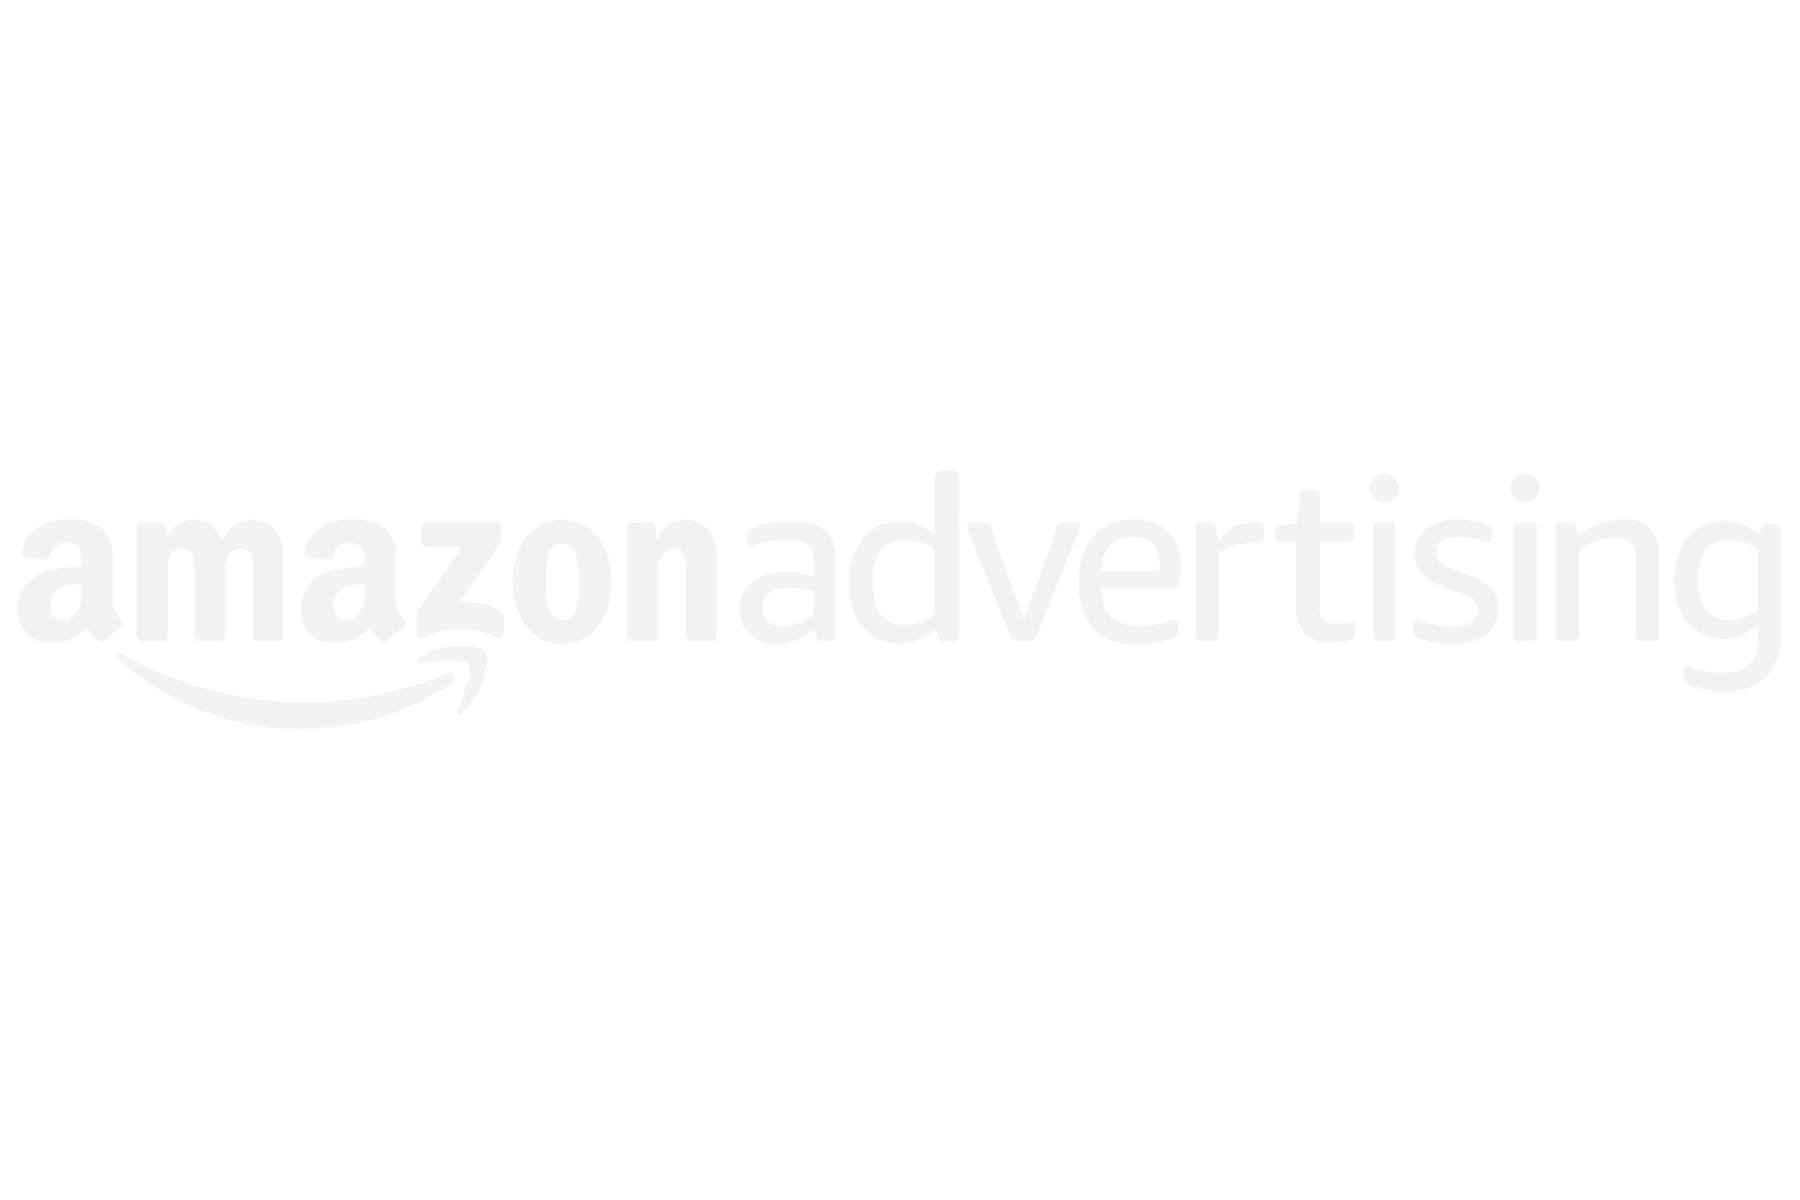 Amazon Advertising (Copy)